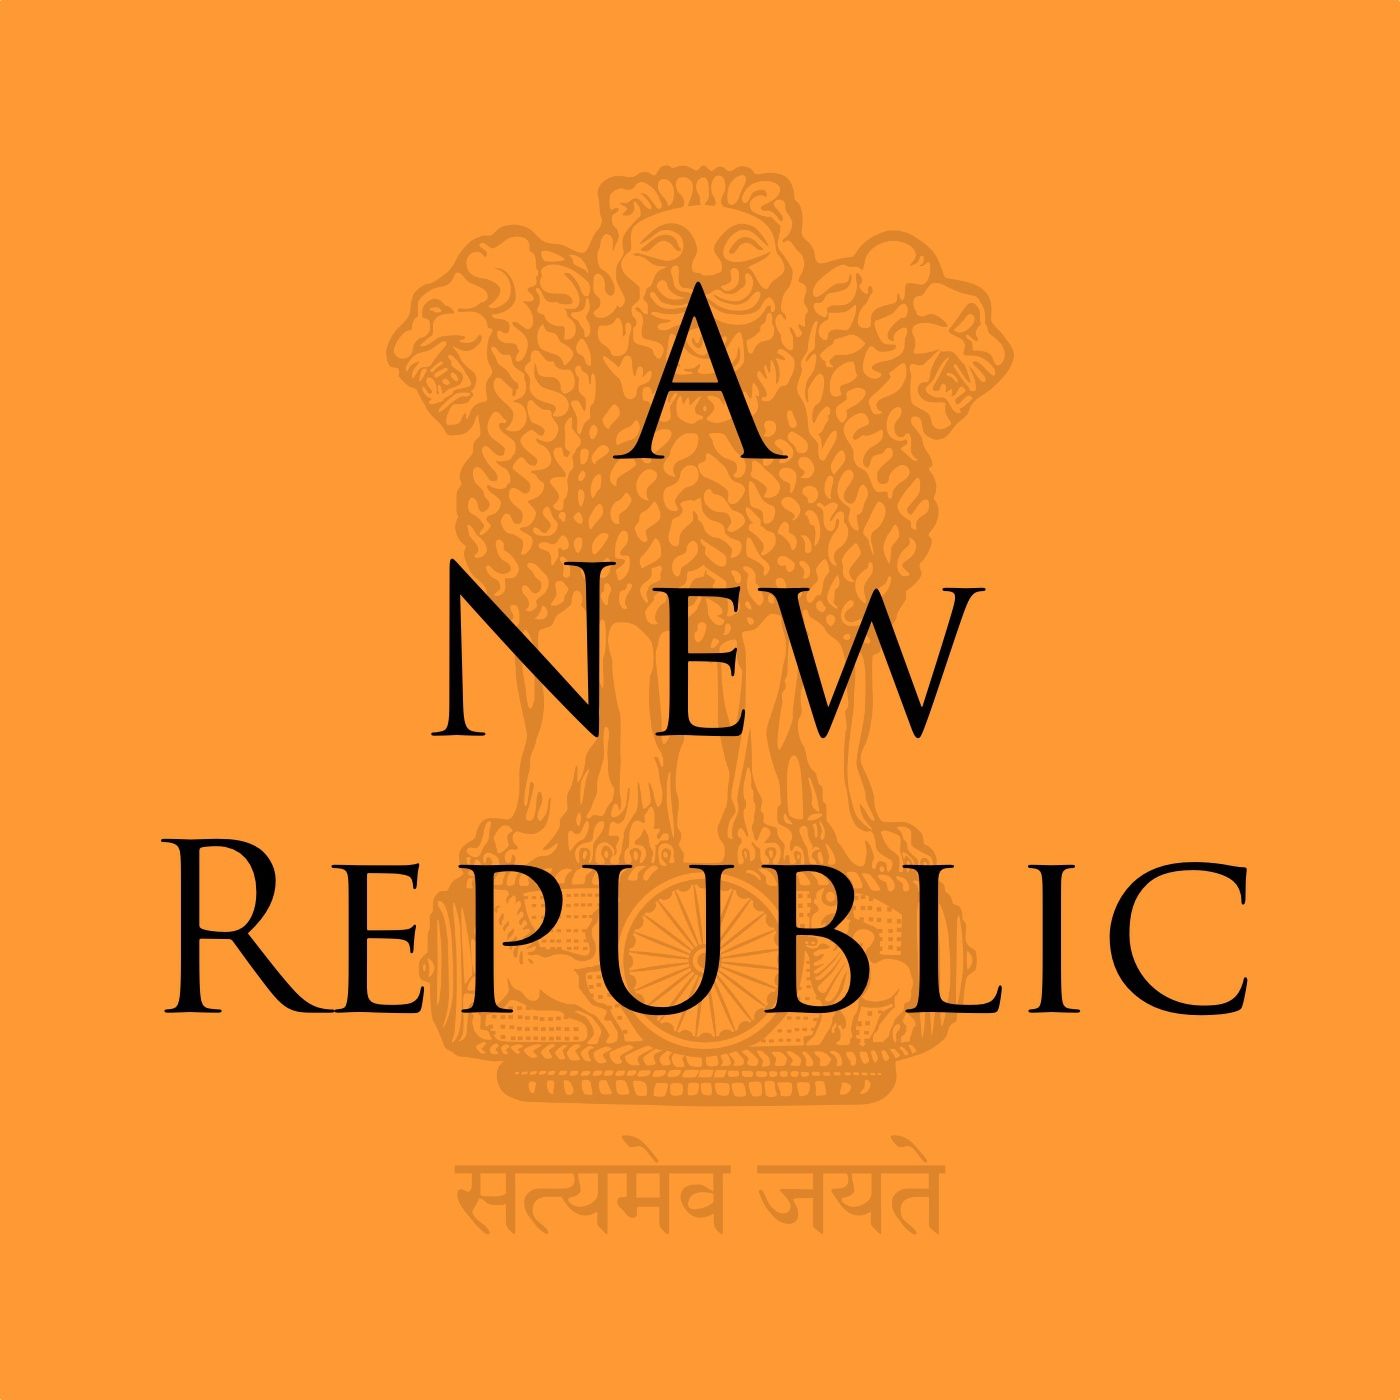 A New Republic - Episode 5: A Little Debate